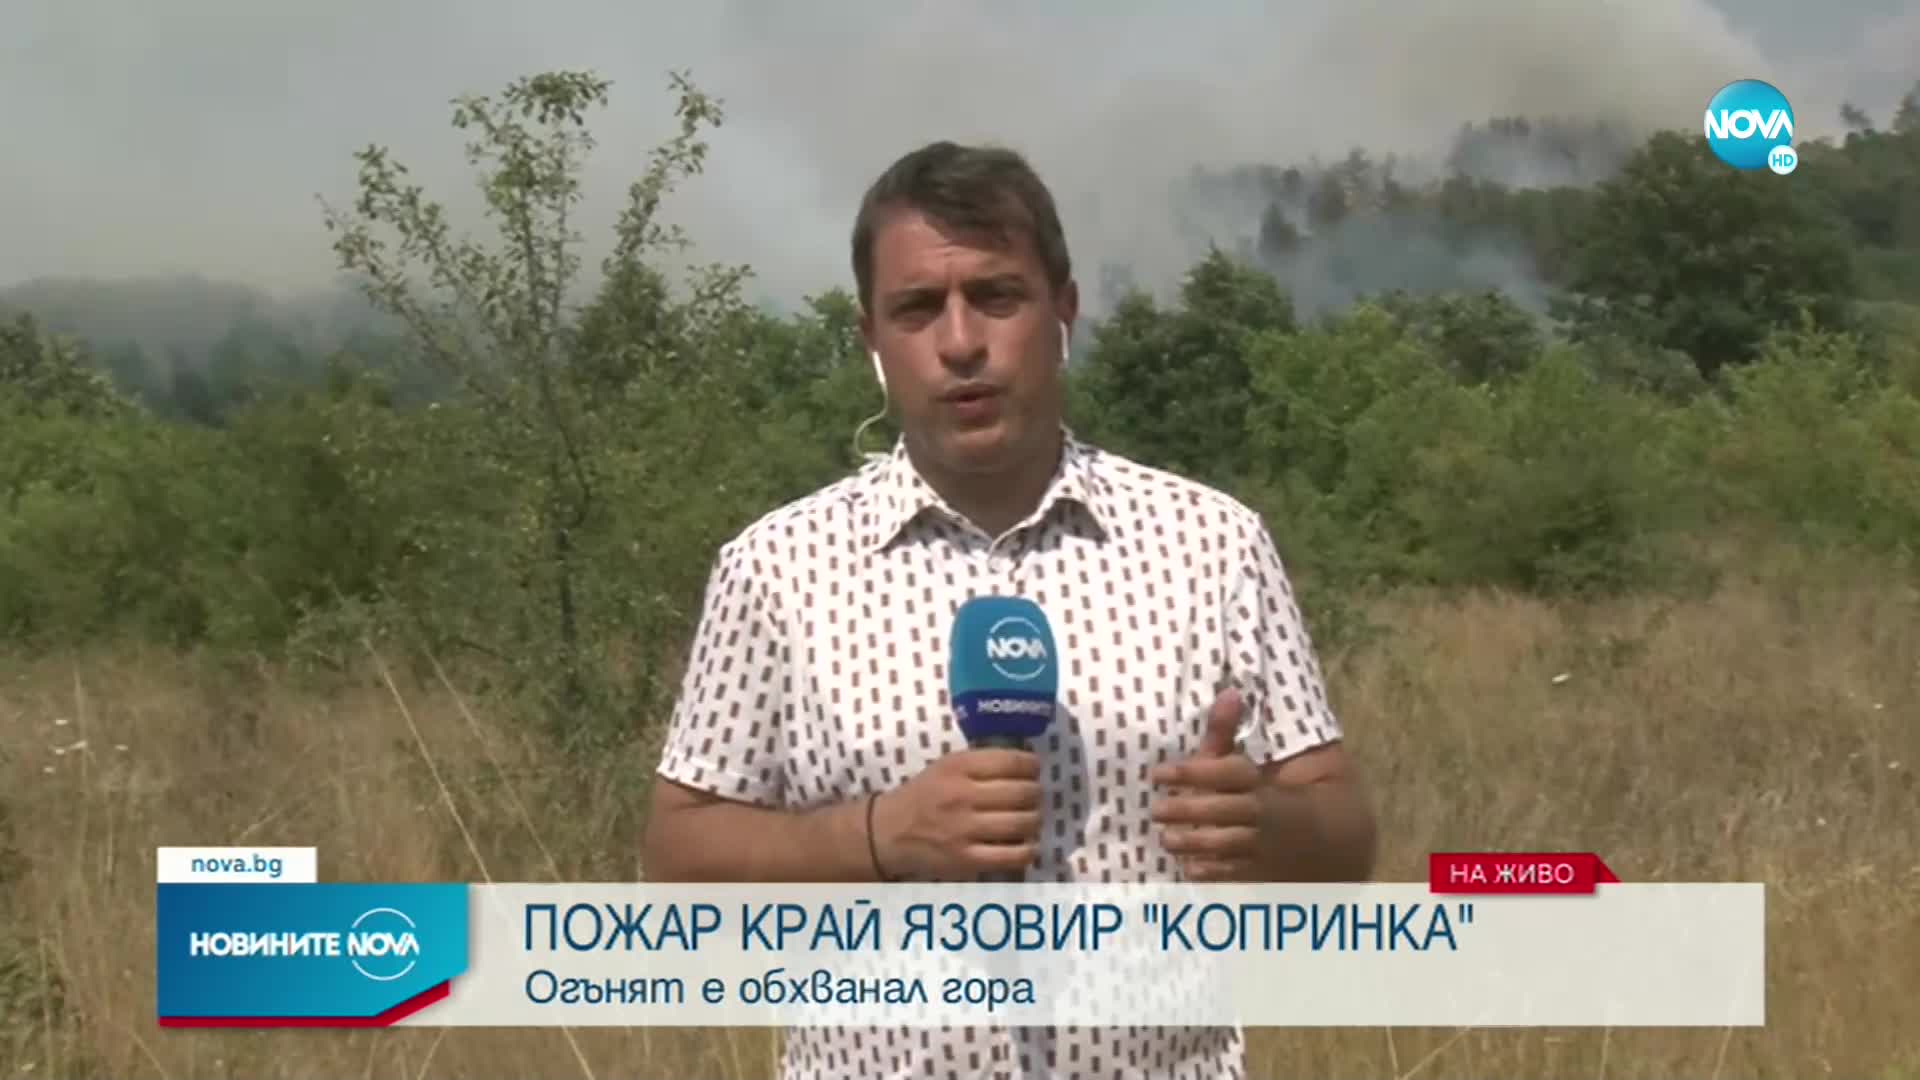 Огромен пожар бушува край язовир "Копринка"